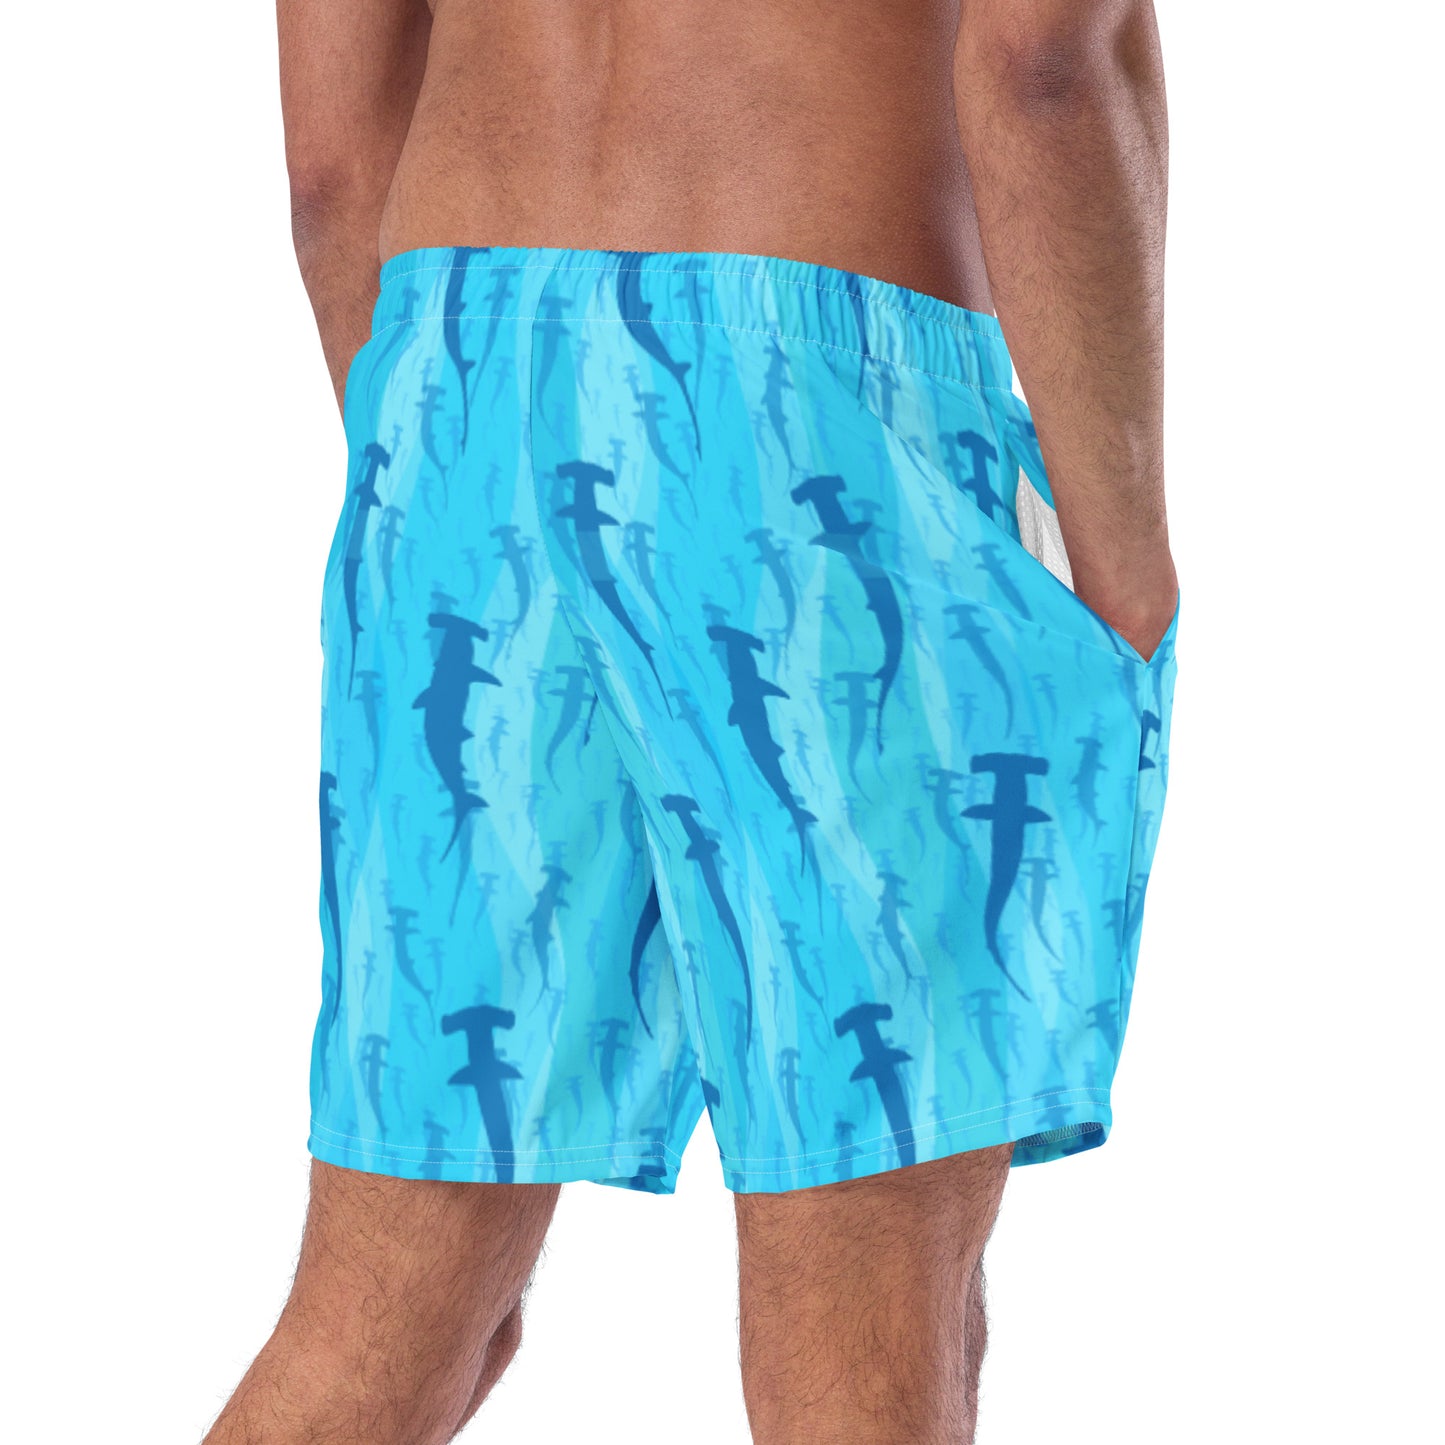 Hammerhead! Men's swim trunks